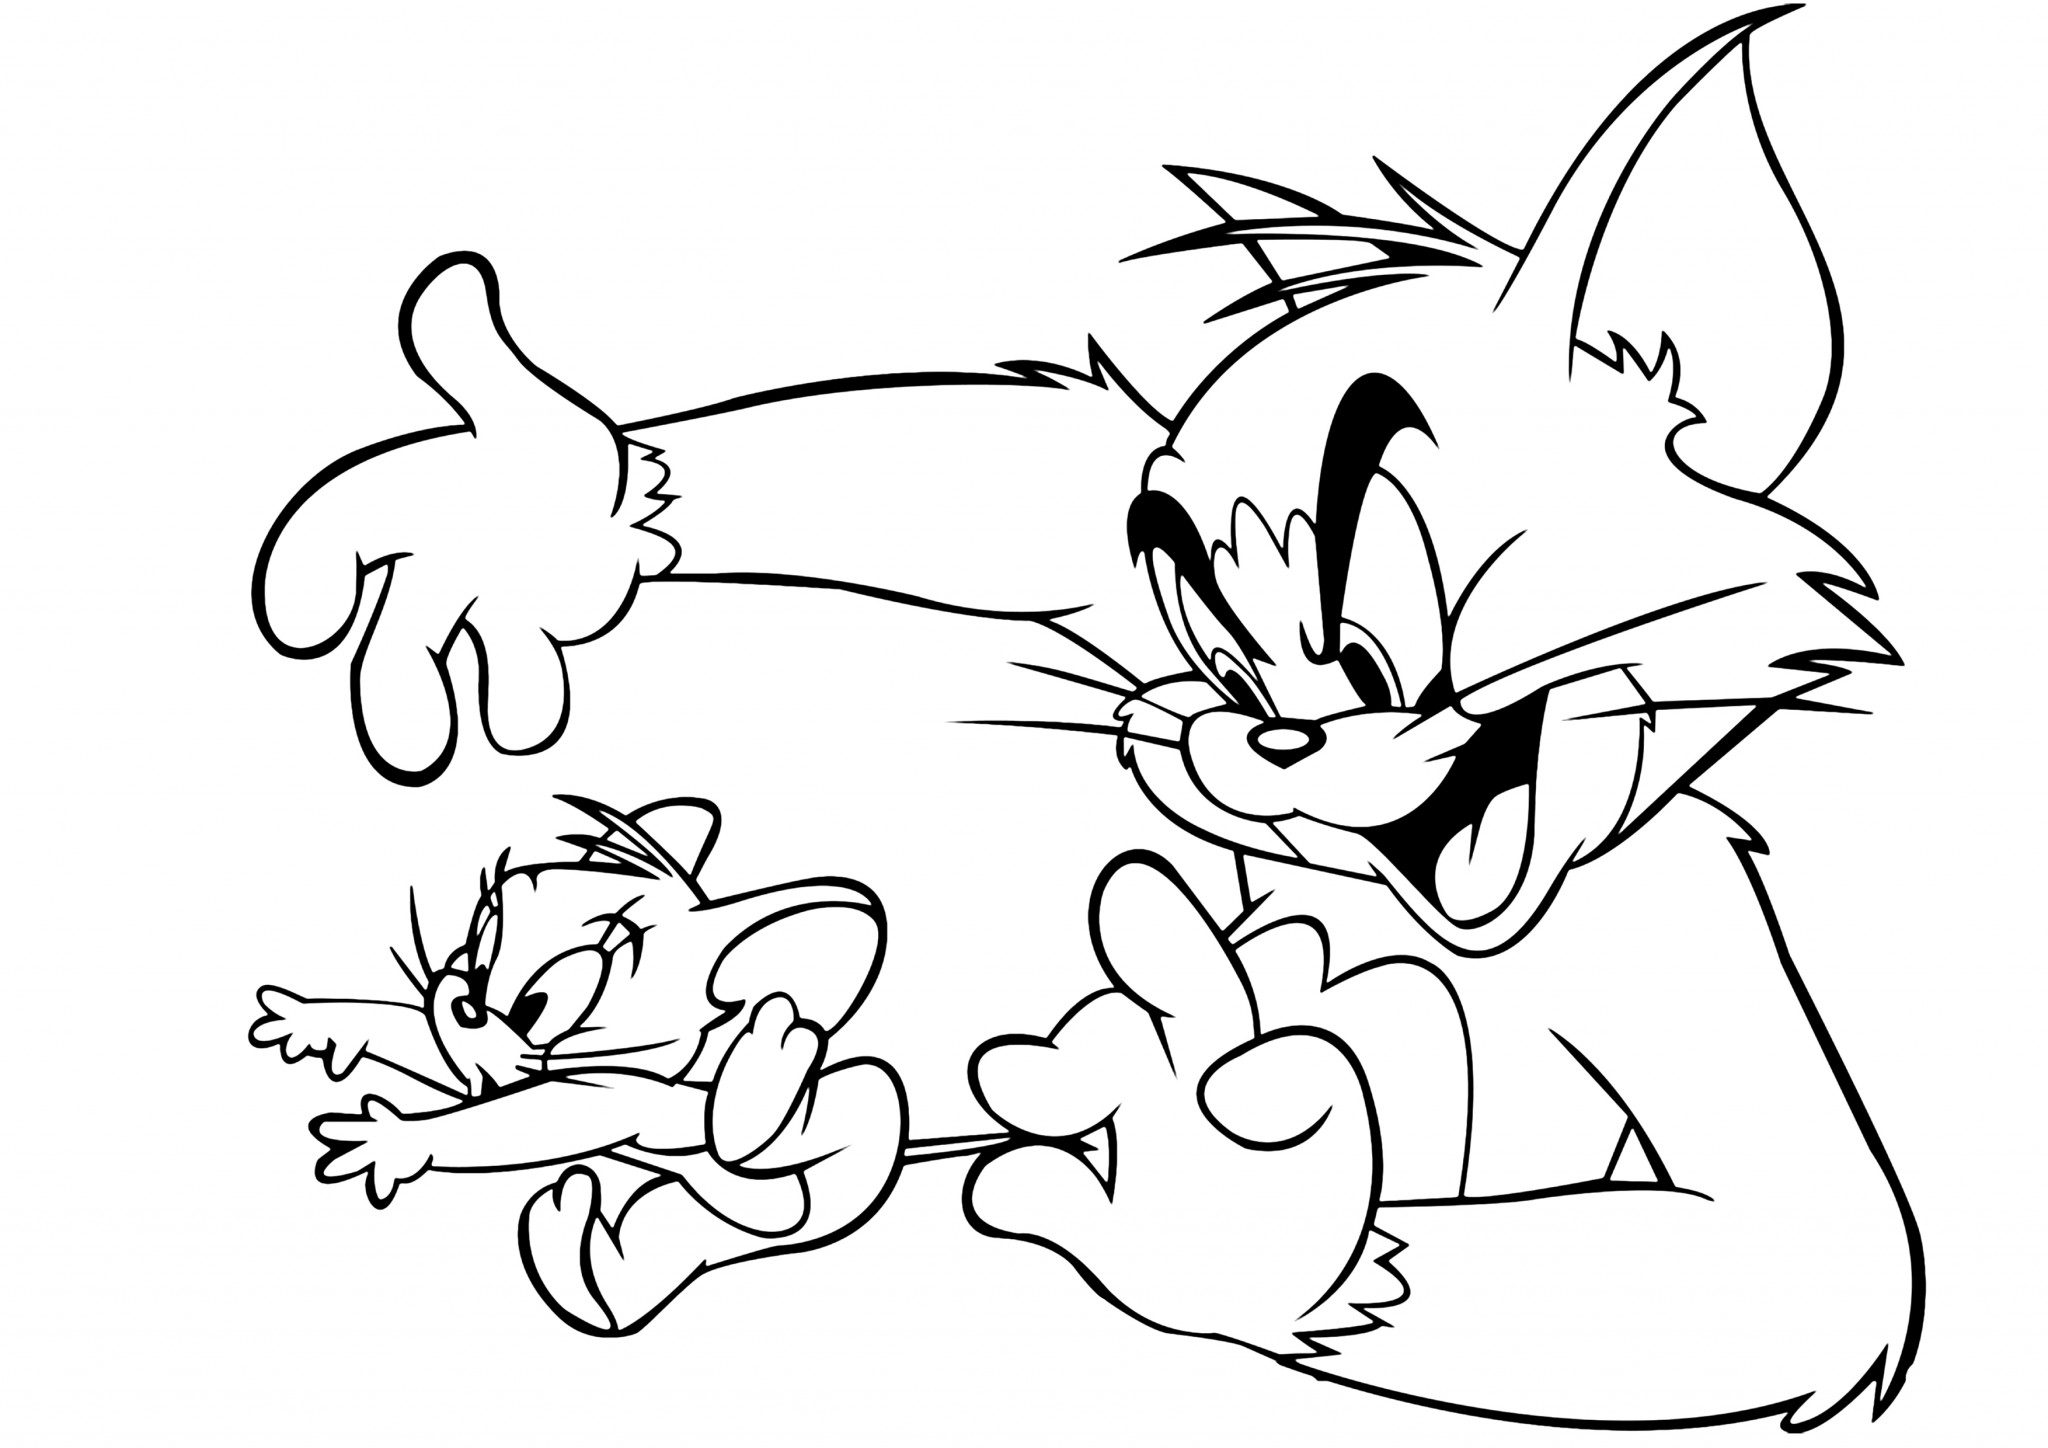 Tom şi Jerry